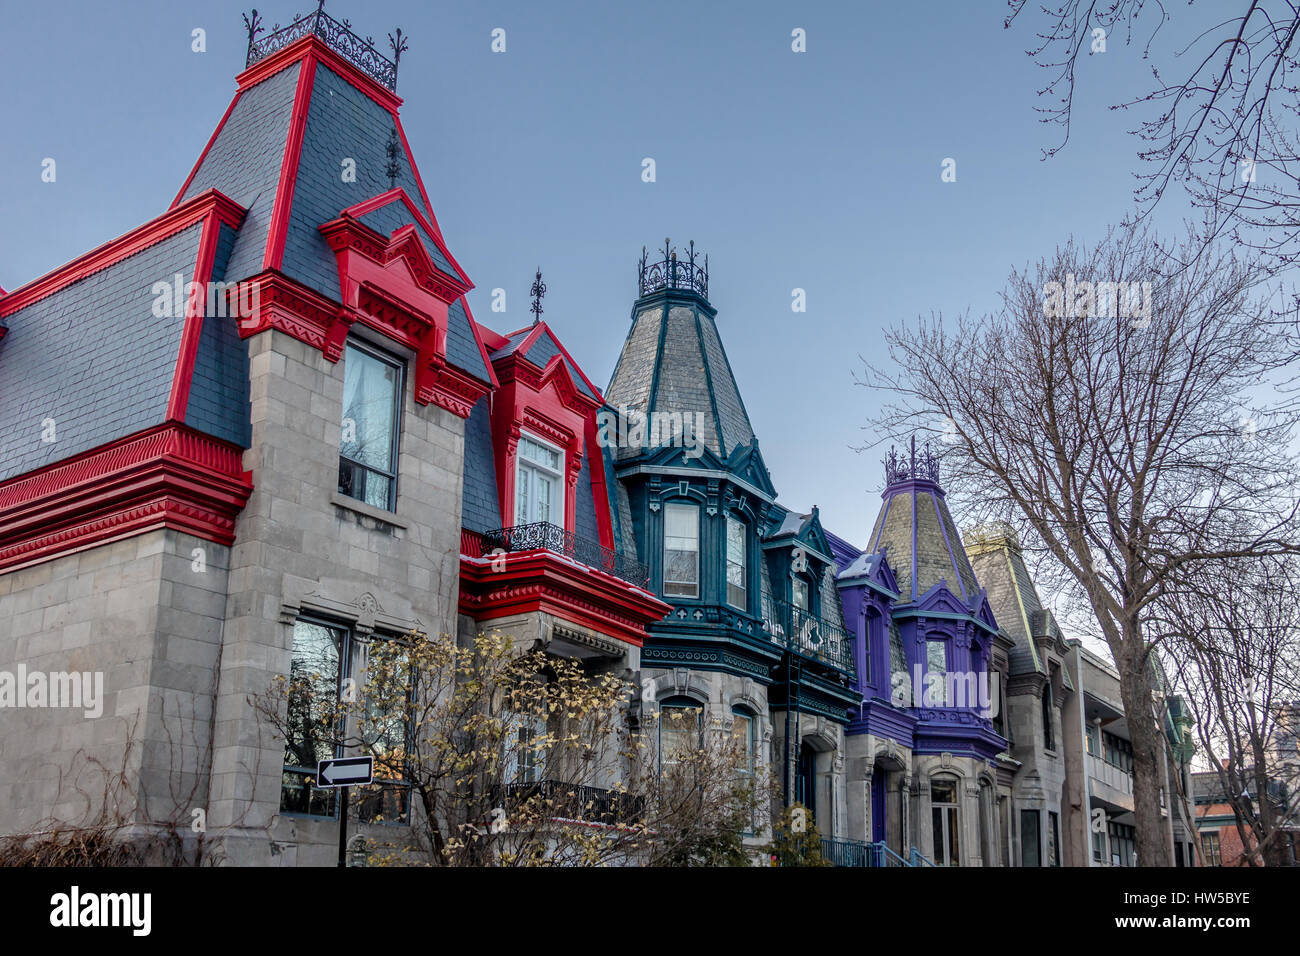 Maisons victoriennes colorées dans Square Saint Louis - Montréal, Québec, Canada Banque D'Images